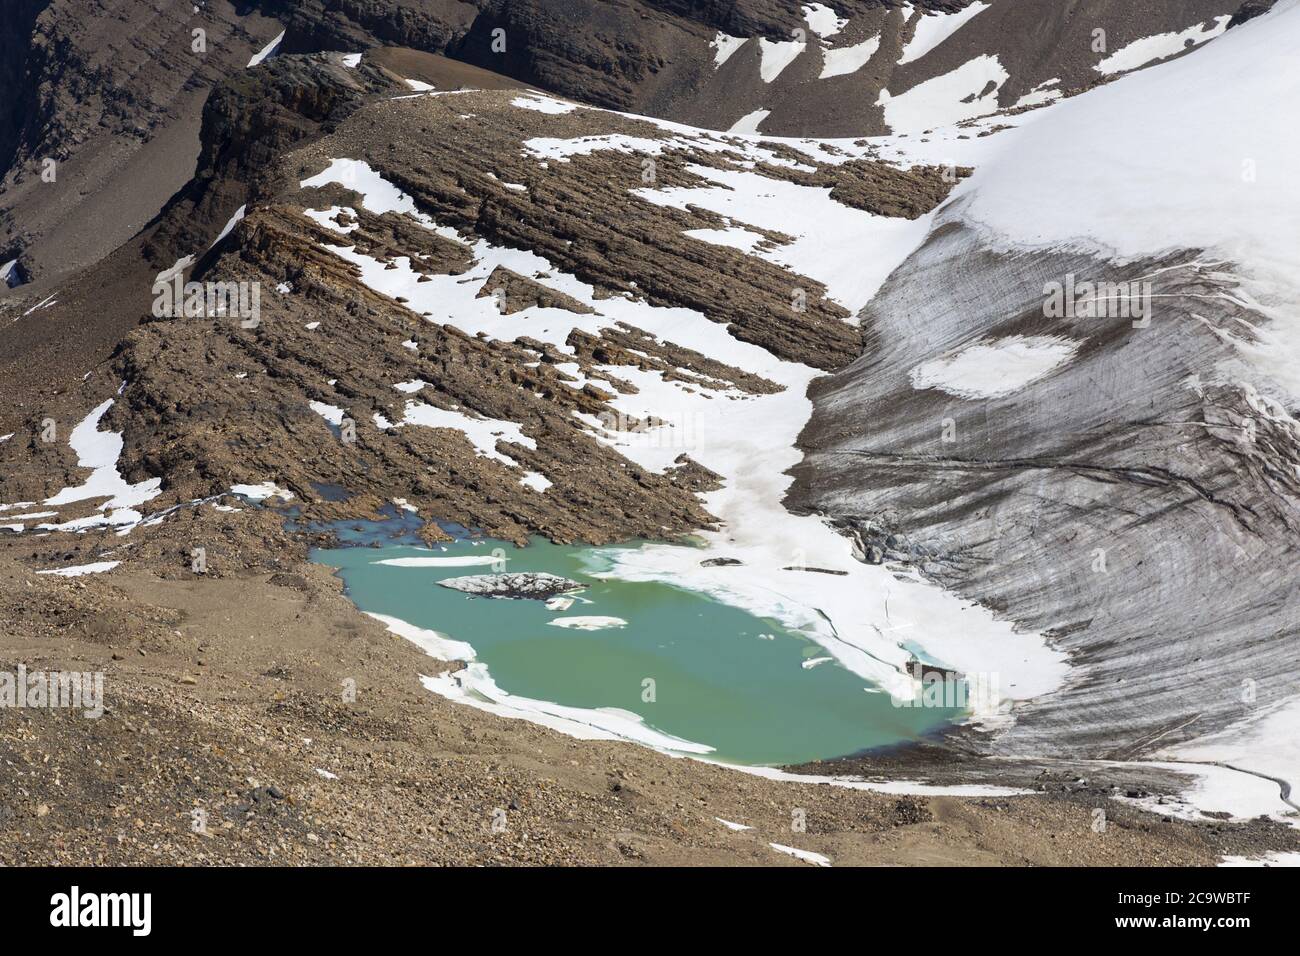 Vue aérienne du lac glaciaire Mountain, de la glace de fusion et du paysage des glaciers dans la nature sauvage du Goat blanc, comté de Brazeau Alberta Canada Banque D'Images